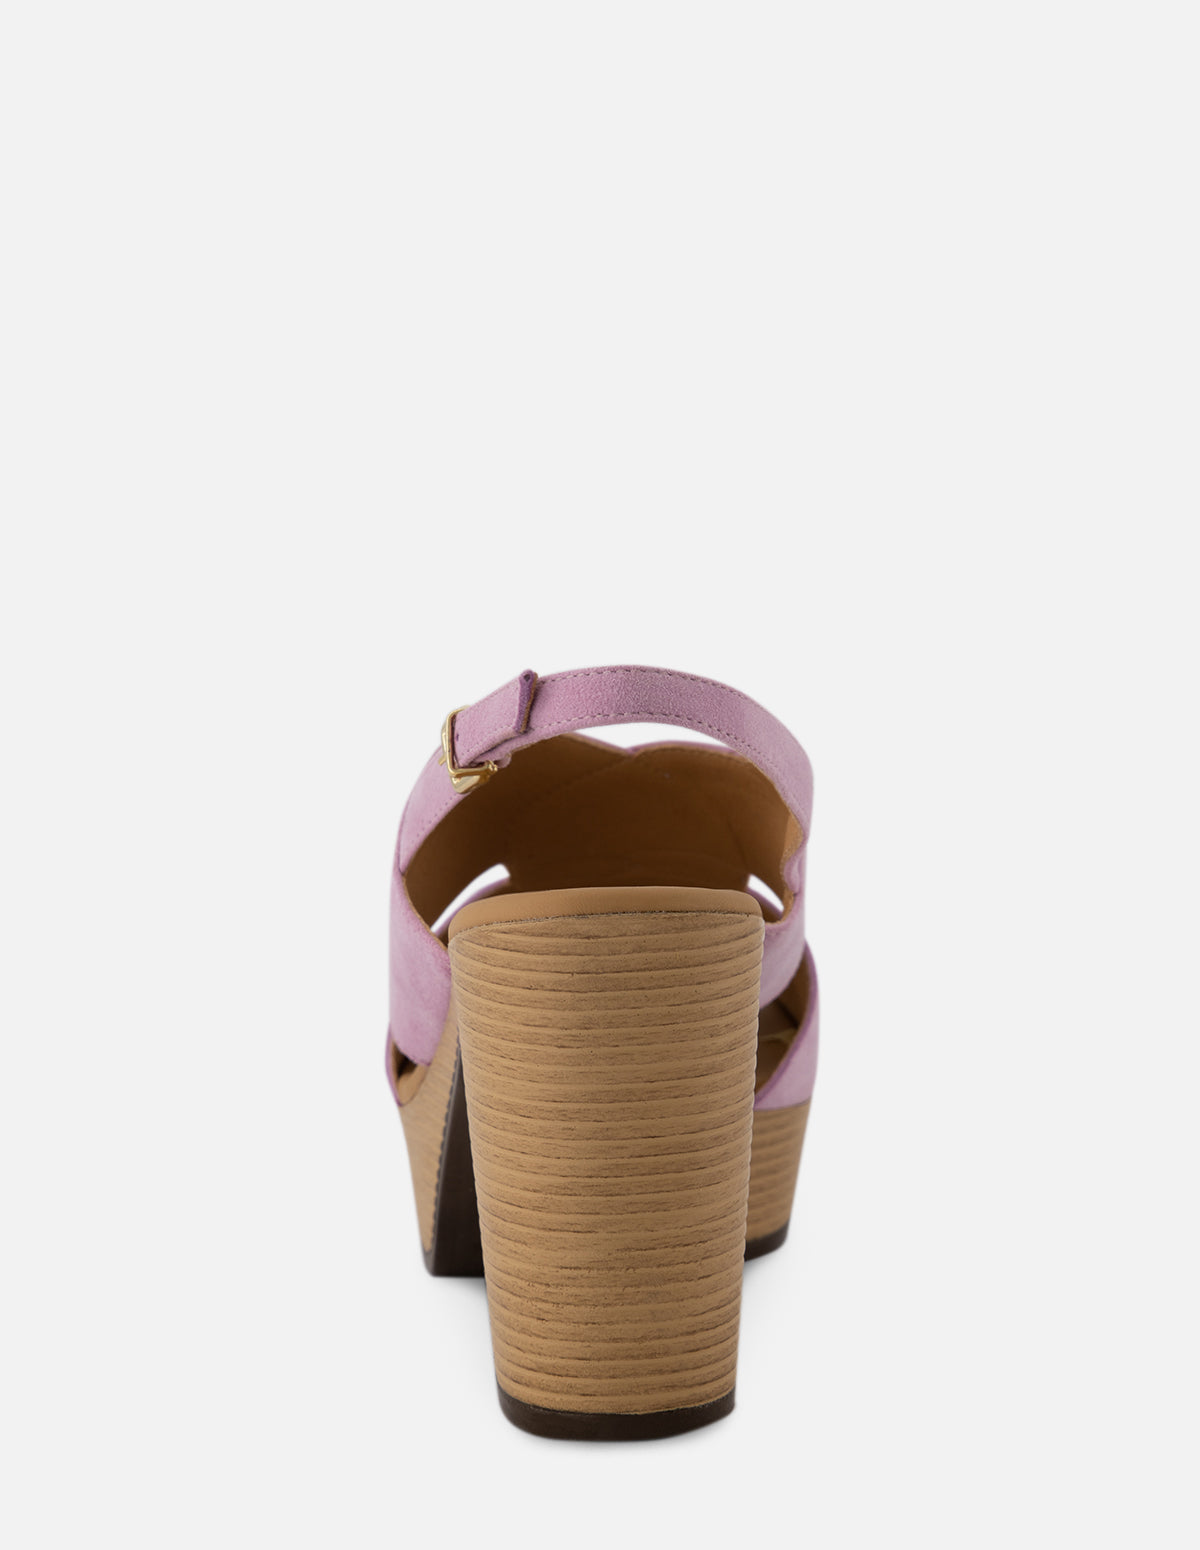 Sandalia de tacón alto en ante color morado para mujer